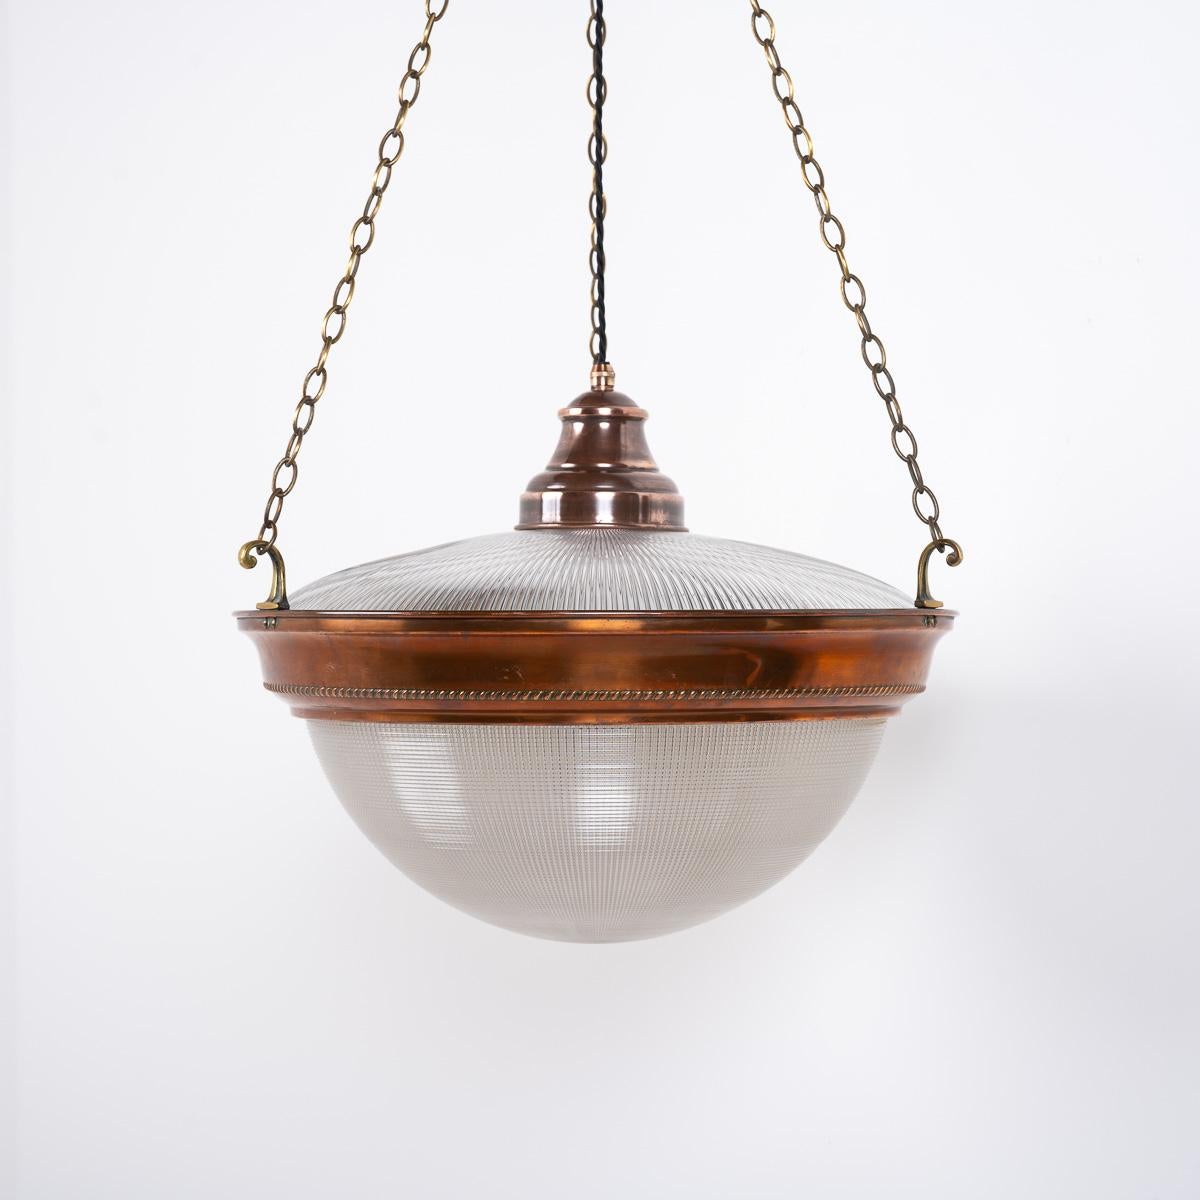 Rare luminaire à pendentif en Holophane surdimensionné d'époque

Une belle et grande lampe suspendue 'Blondel Stiletto Bowl' fabriquée en Angleterre vers 1930 par Holophane.

Superbe luminaire en deux parties composé d'une partie supérieure en forme